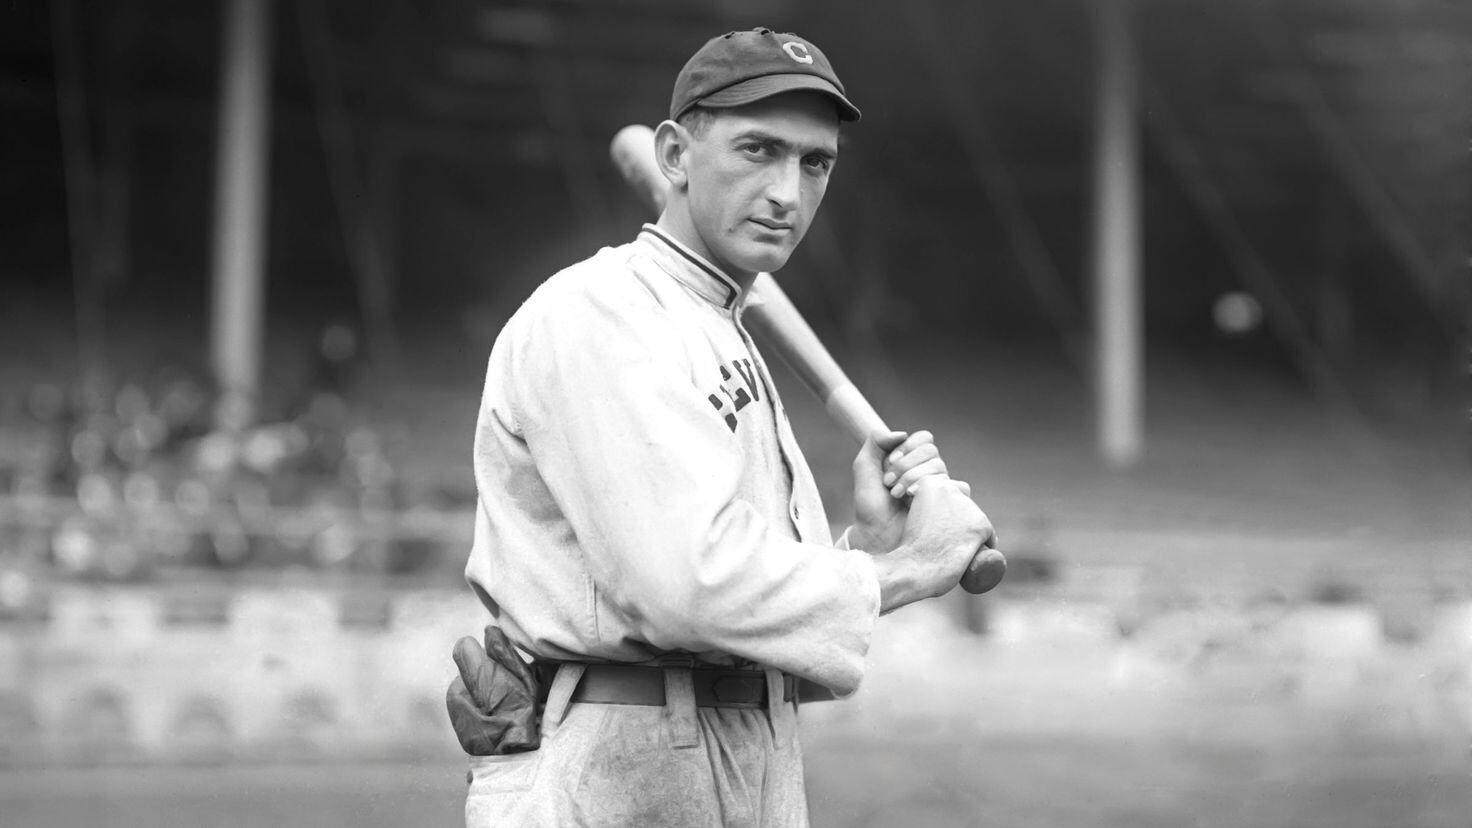 Pin on White Sox Baseball: 1913 - 1920 Teams